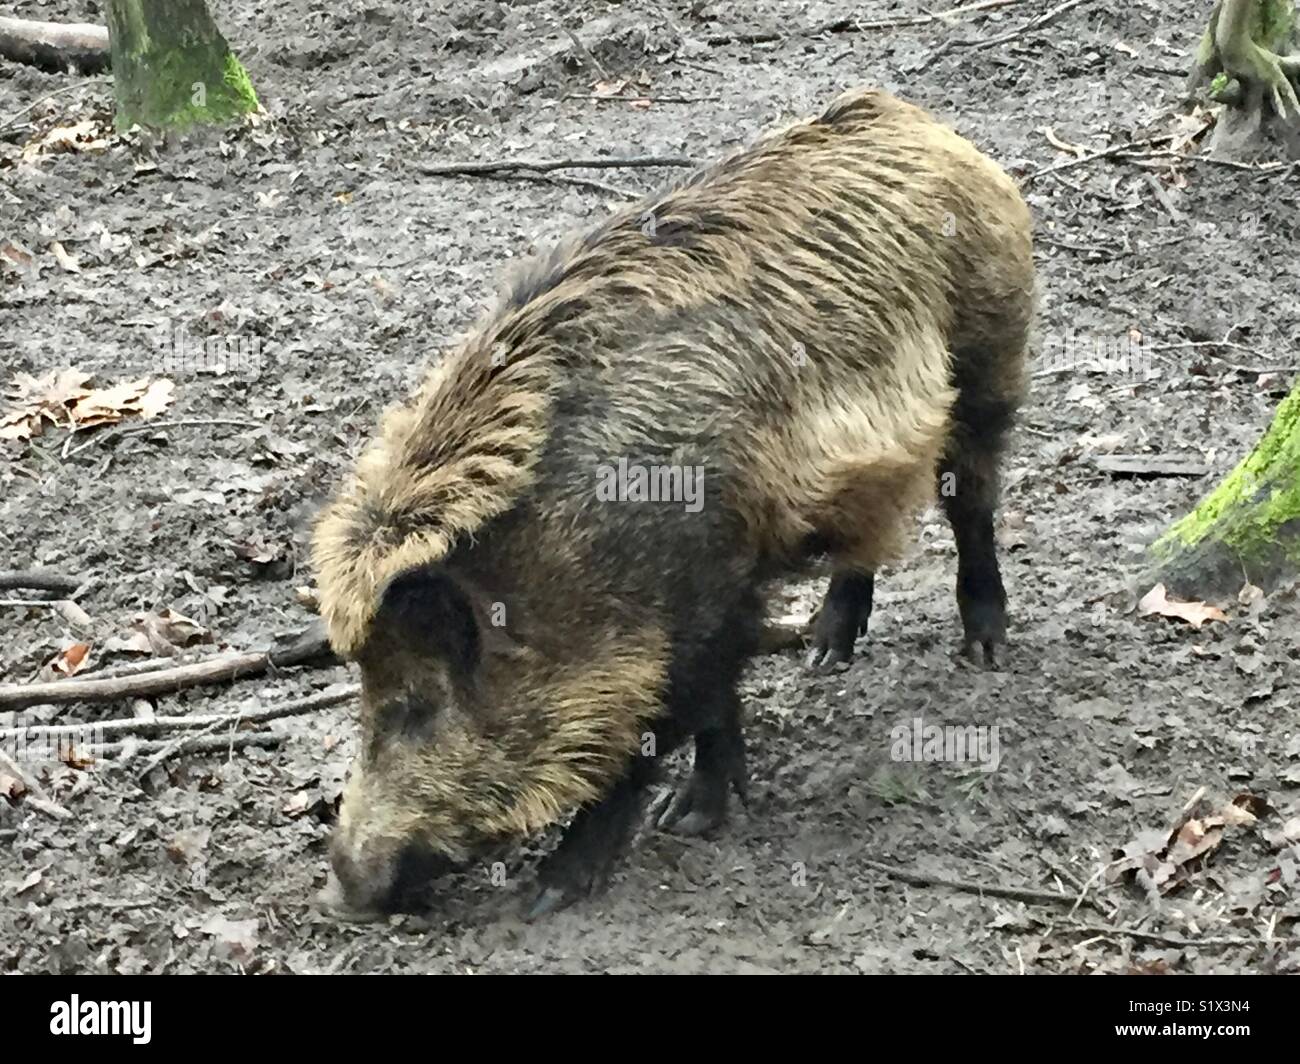 Wild pig in Berlin Forest, North west Berlin, Germany. Wildschwein im Berliner Forst im Nordwest Berlin. Stock Photo